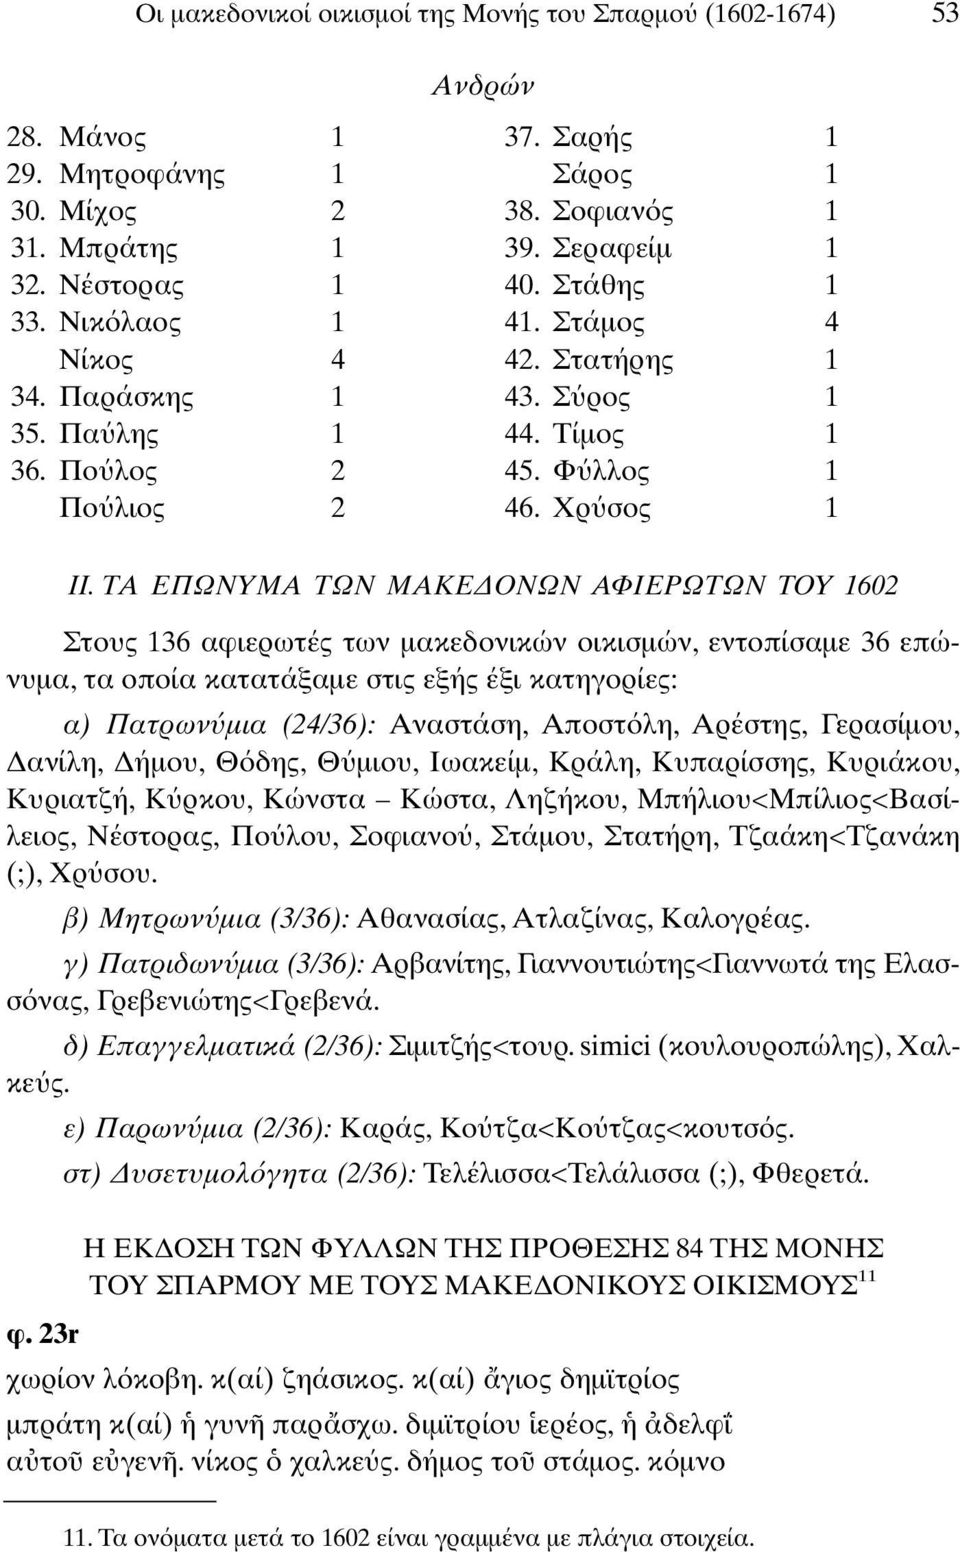 ΤΑ ΕΠΩΝΥΜΑ ΤΩΝ ΜAΚΕ ΟΝΩΝ ΑΦΙΕΡΩΤΩΝ ΤΟΥ 1602 Στους 136 αφιερωτές των µακεδονικών οικισµών, εντοπίσαµε 36 επώνυµα, τα οποία κατατάξαµε στις εξής έξι κατηγορίες: α) Πατρων µια (24/36): Αναστάση, Αποστ